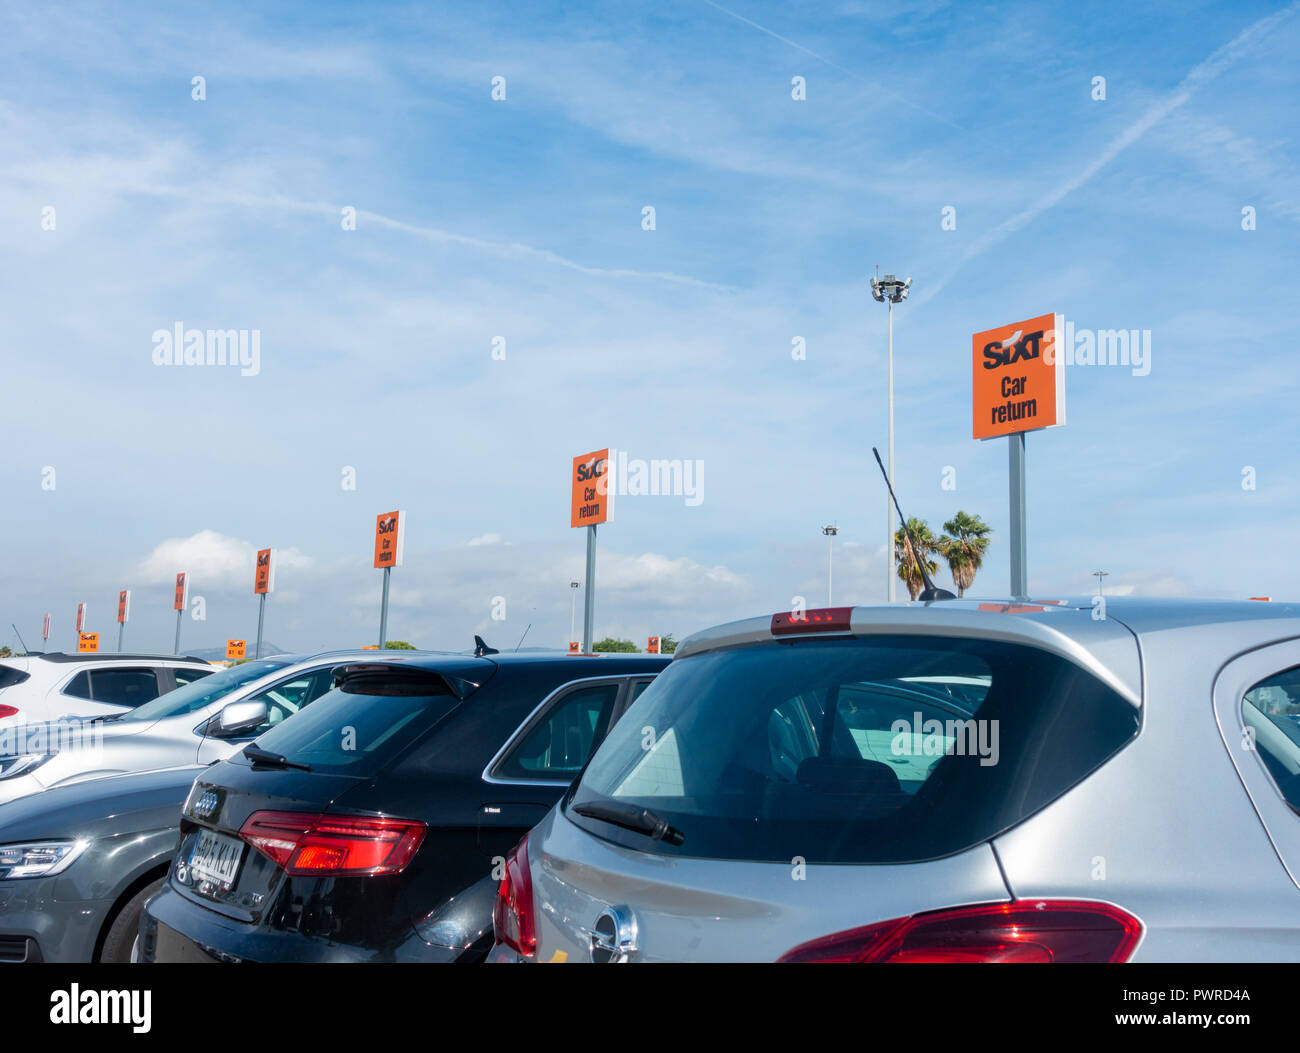 Sixt Autovermietung compound am Flughafen Barcelona. Spanien Stockfoto